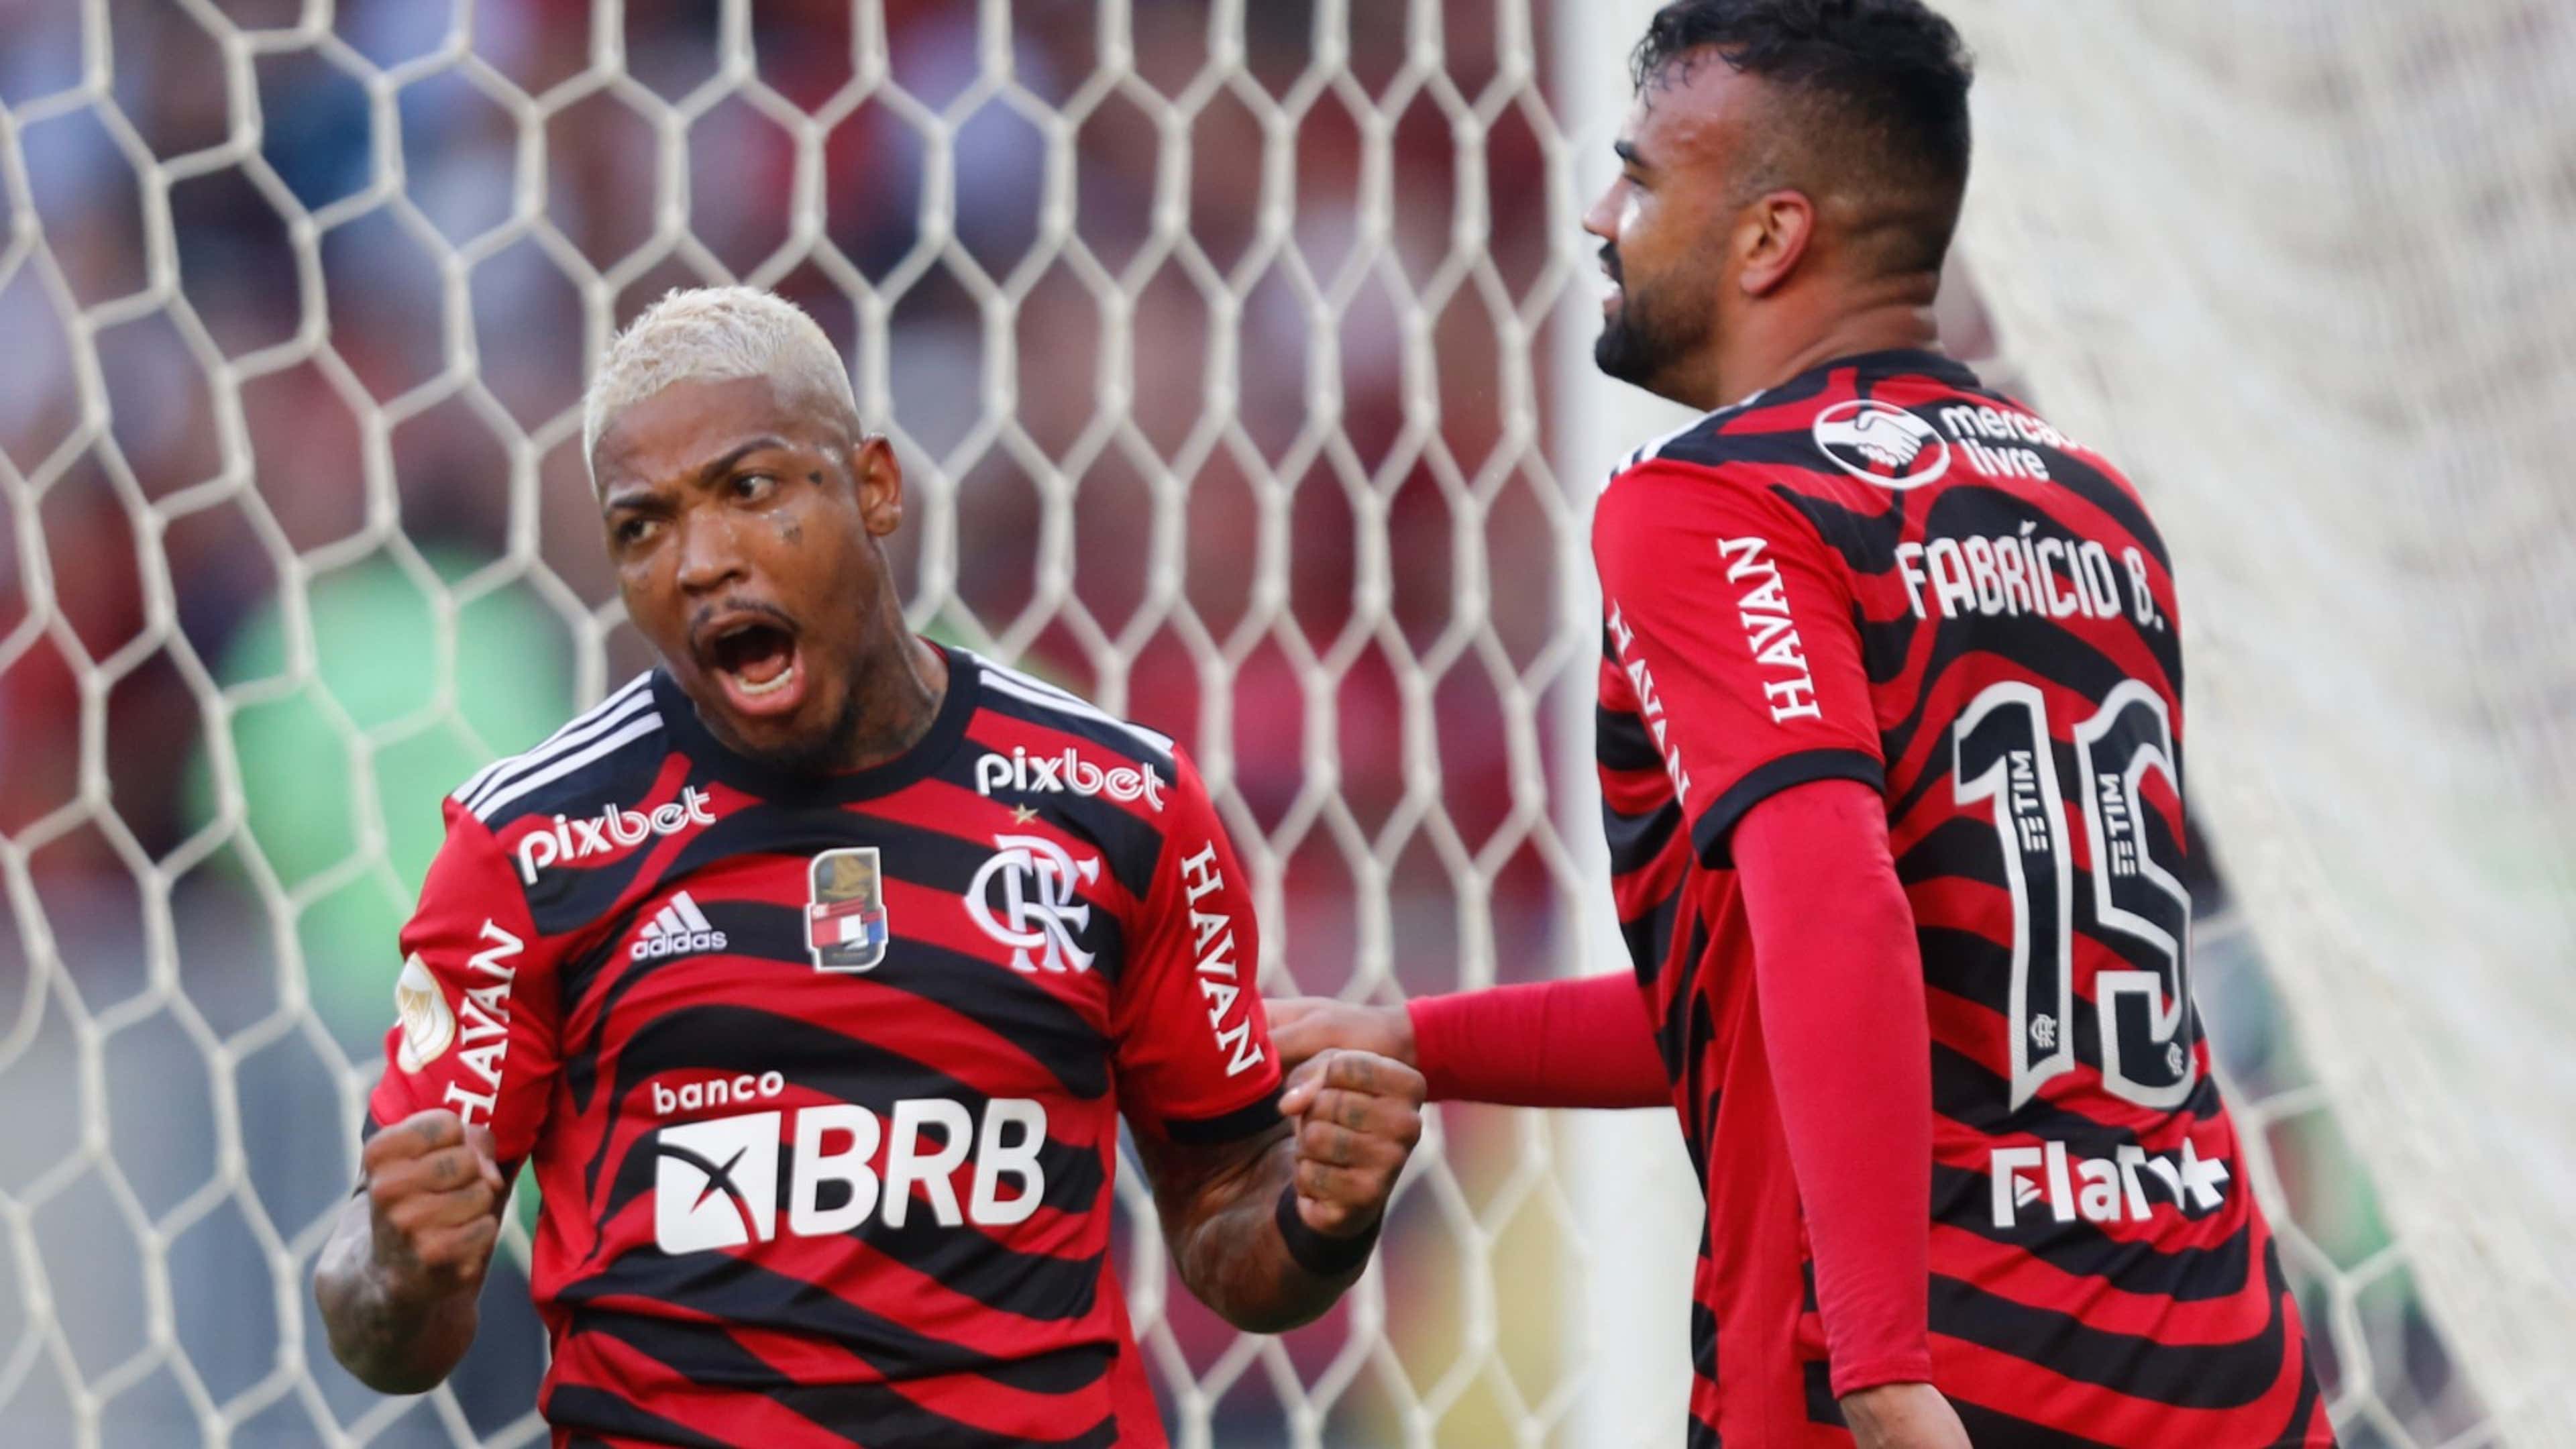 Analistas avaliam elenco do Flamengo e projetam time titular para